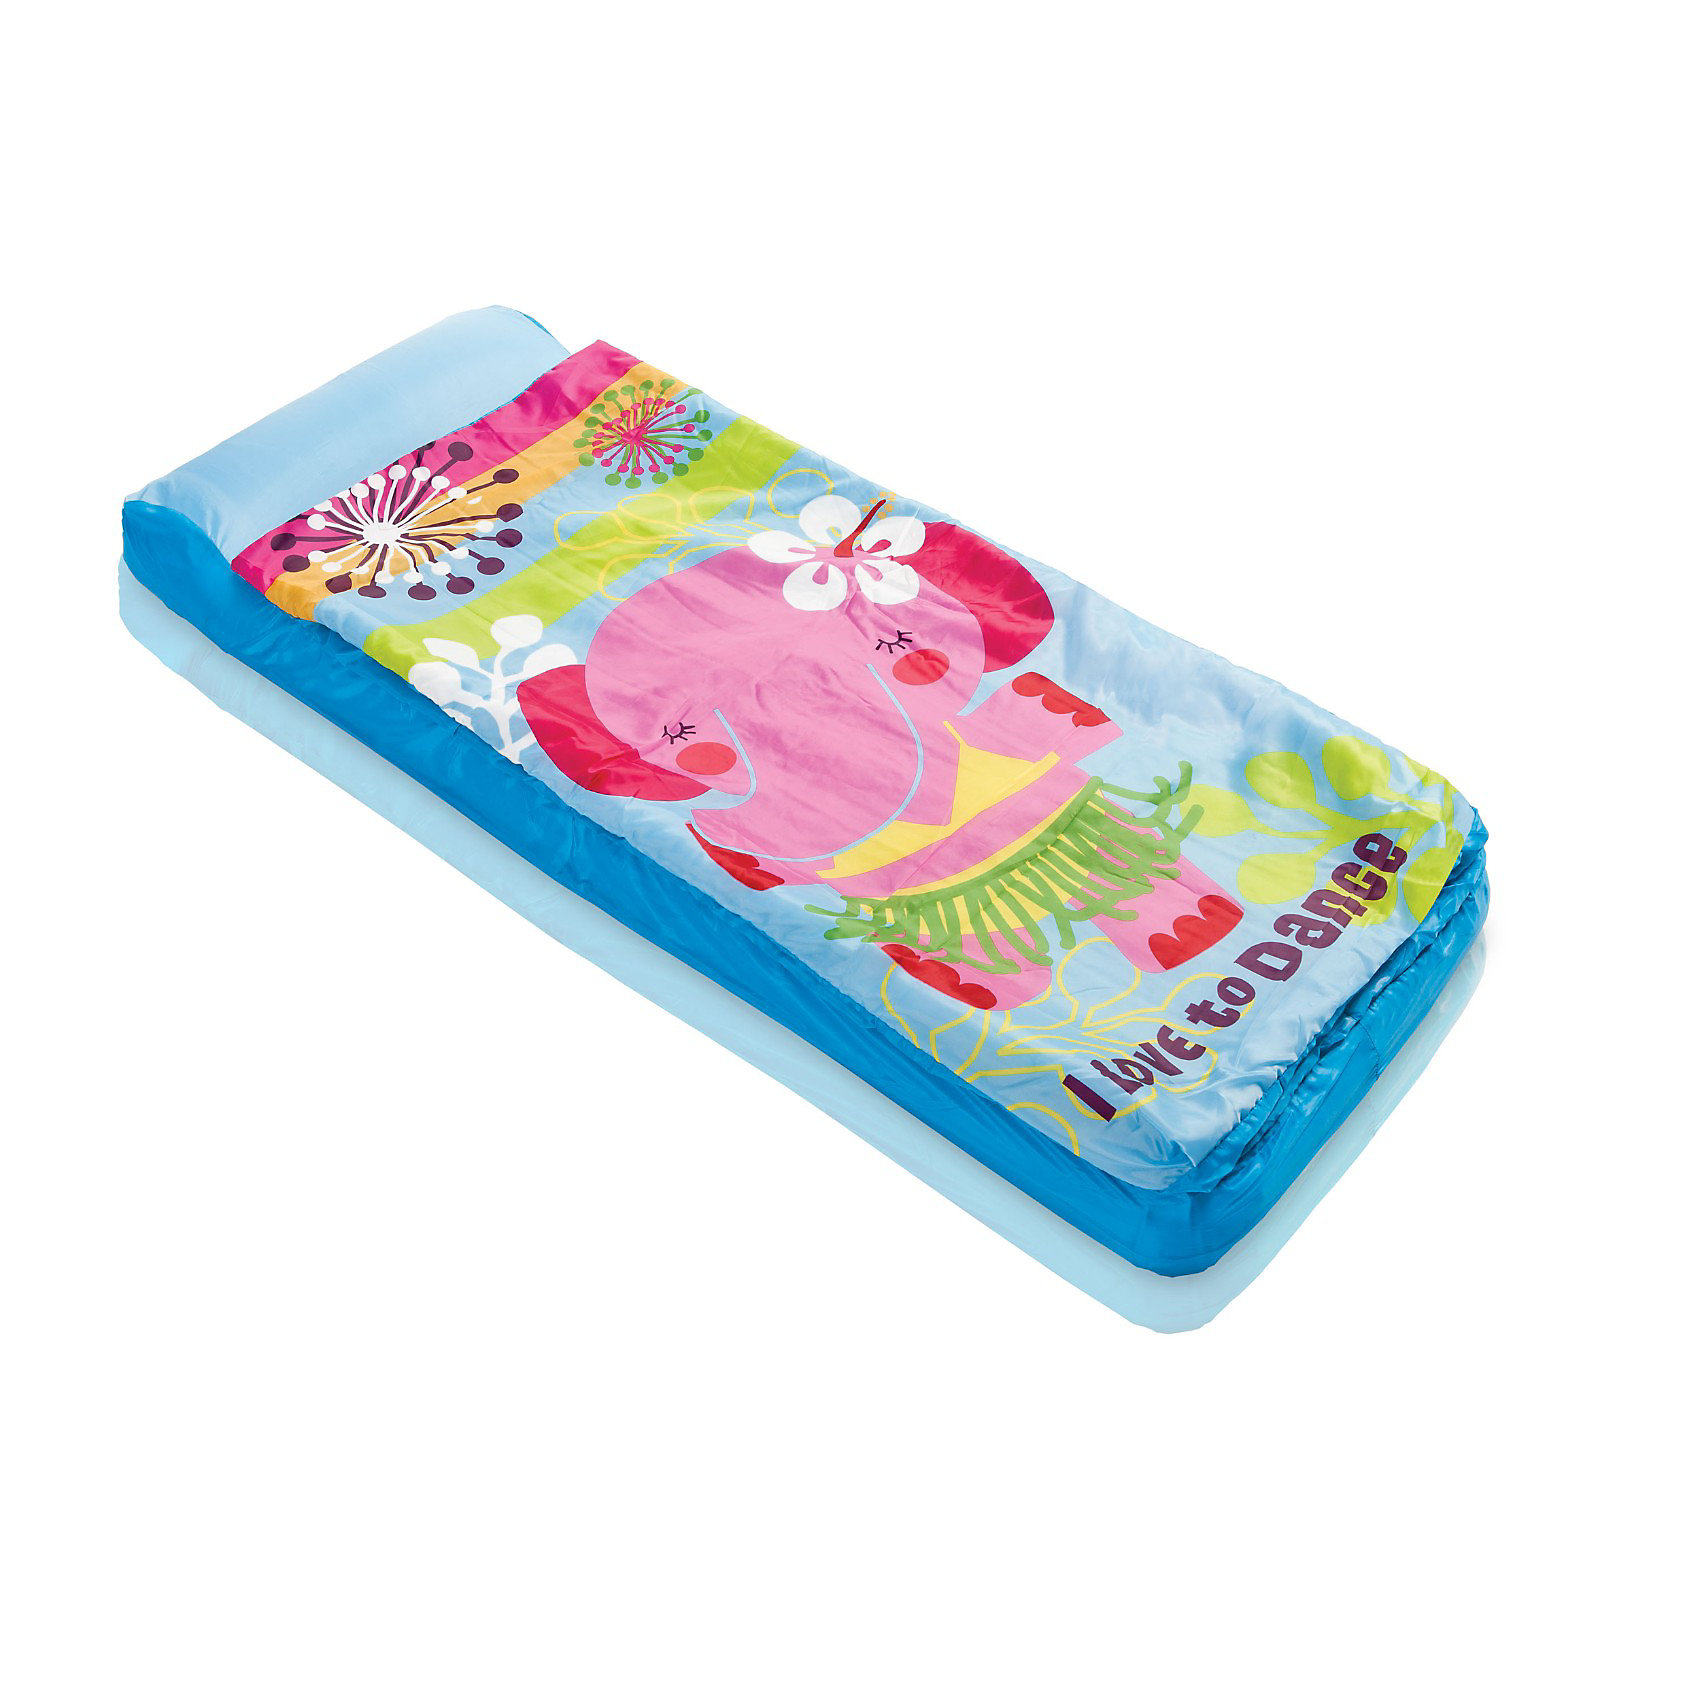 Детский надувной матрас Intex 66802 «Hula Elly Kidz Airbed» со спальным мешком и насосом